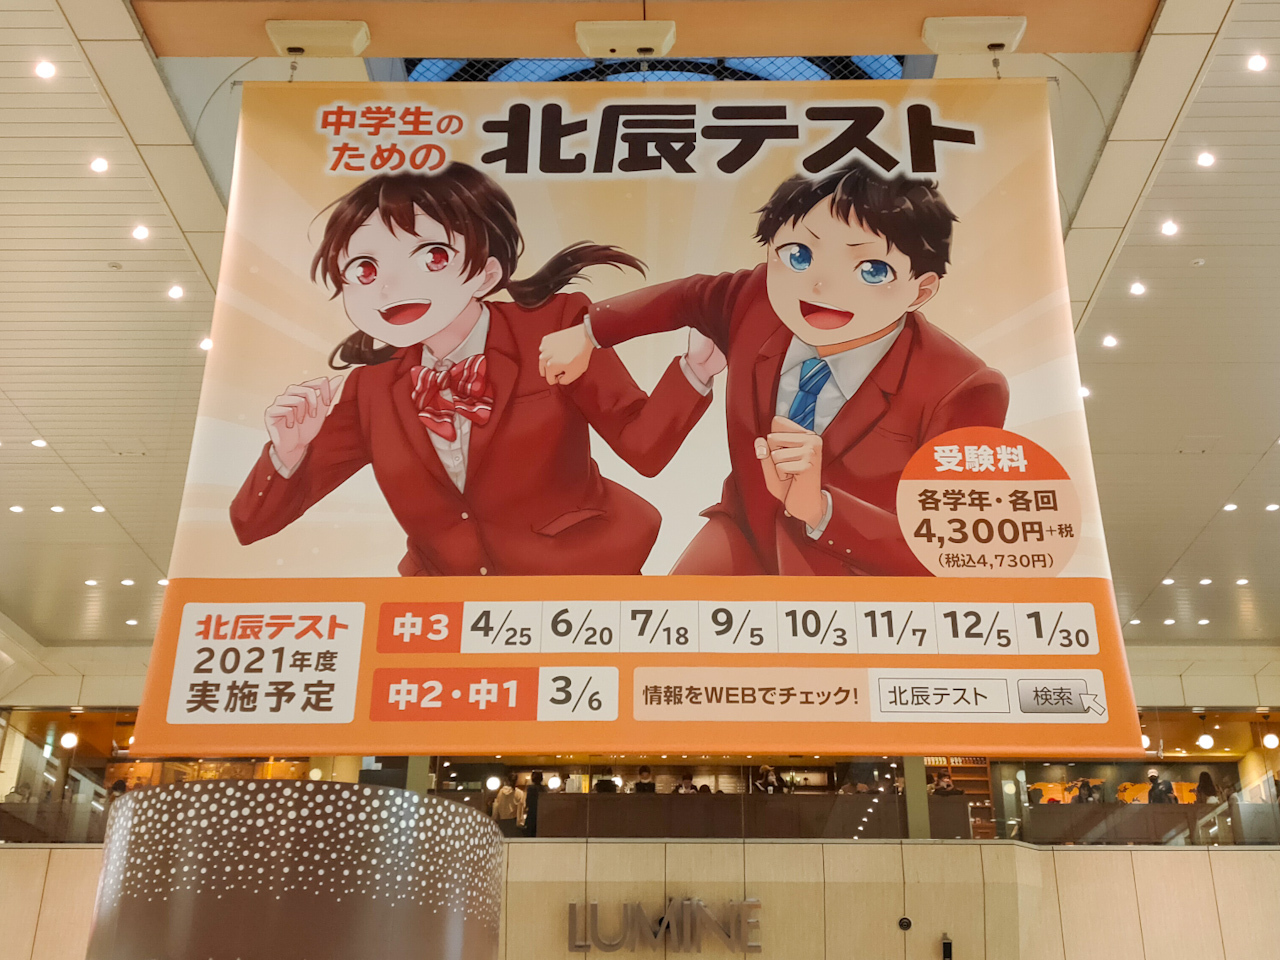 こちらは大宮駅構内に掲げられていた「北辰テスト」の広告。「北辰テスト」は埼玉限定なのだそうです。